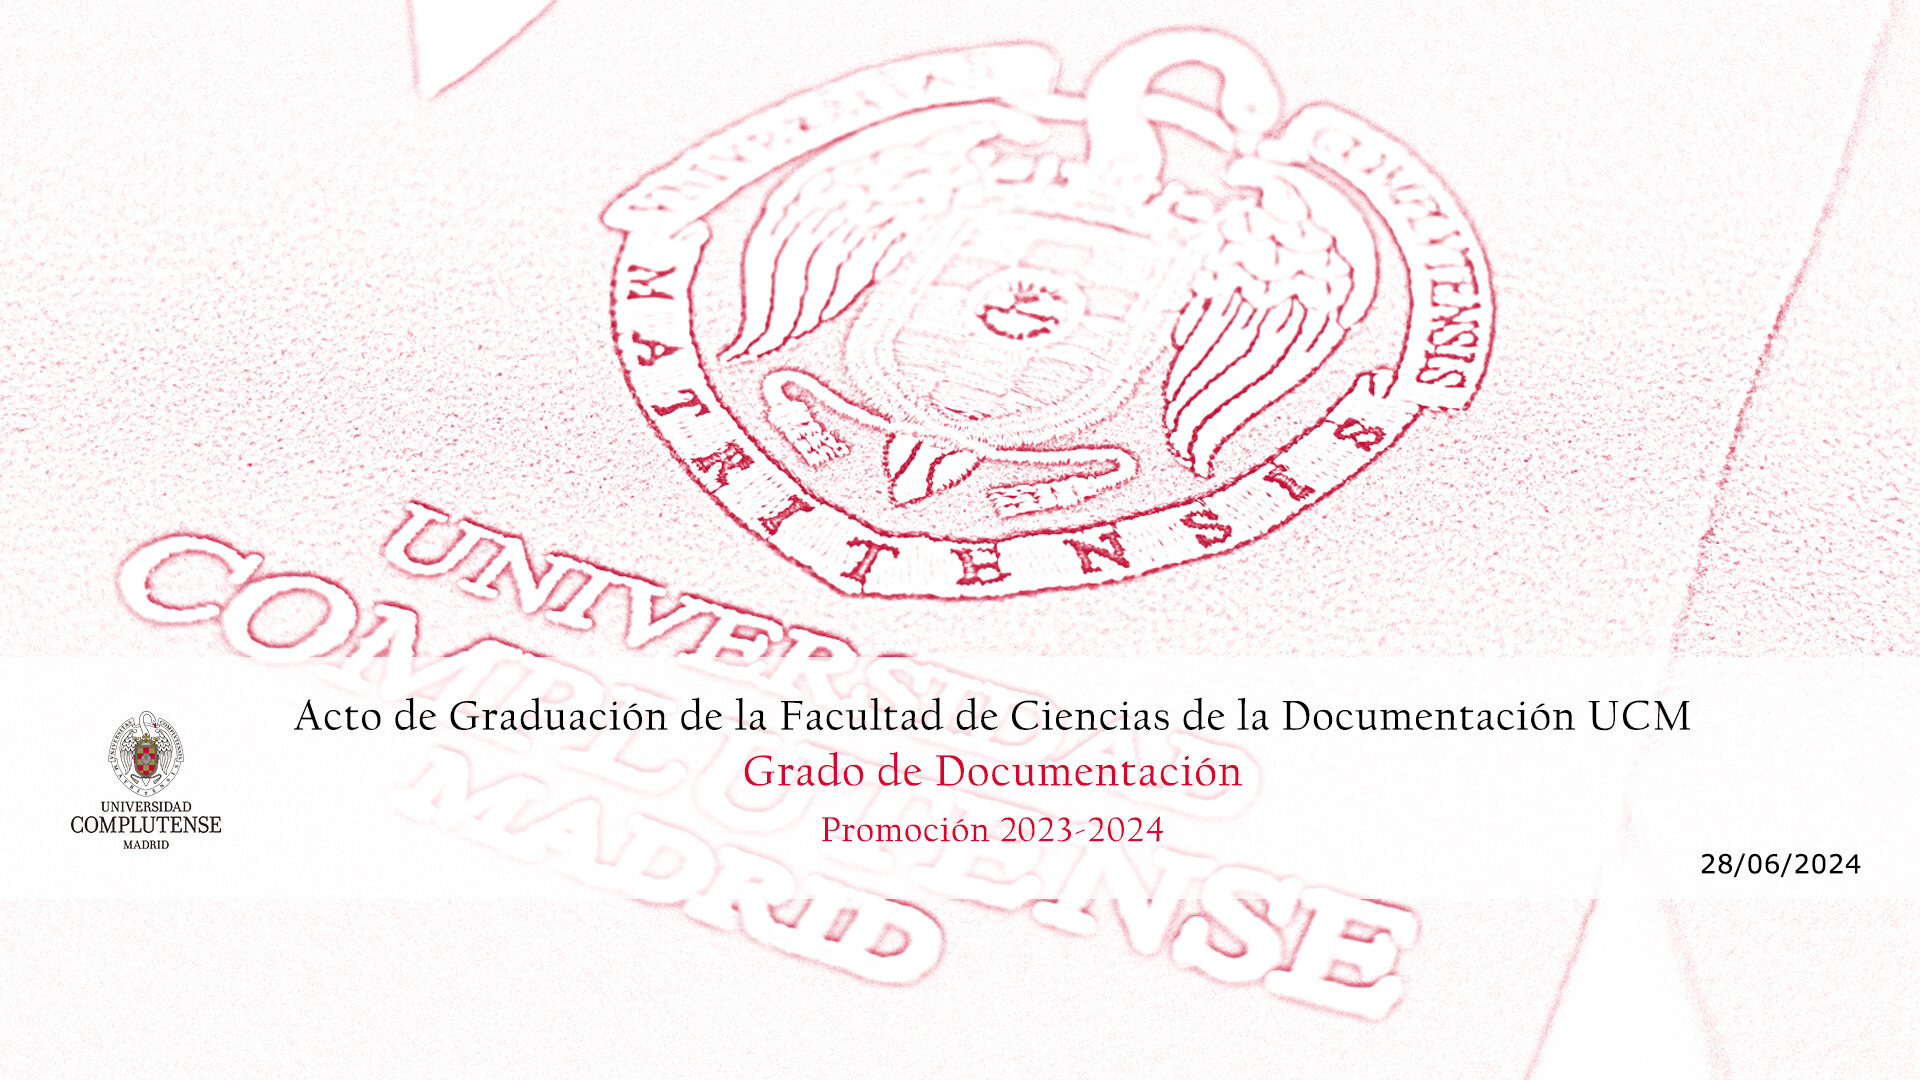 Acto de Graduación de la Facultad de Ciencias de la Documentación